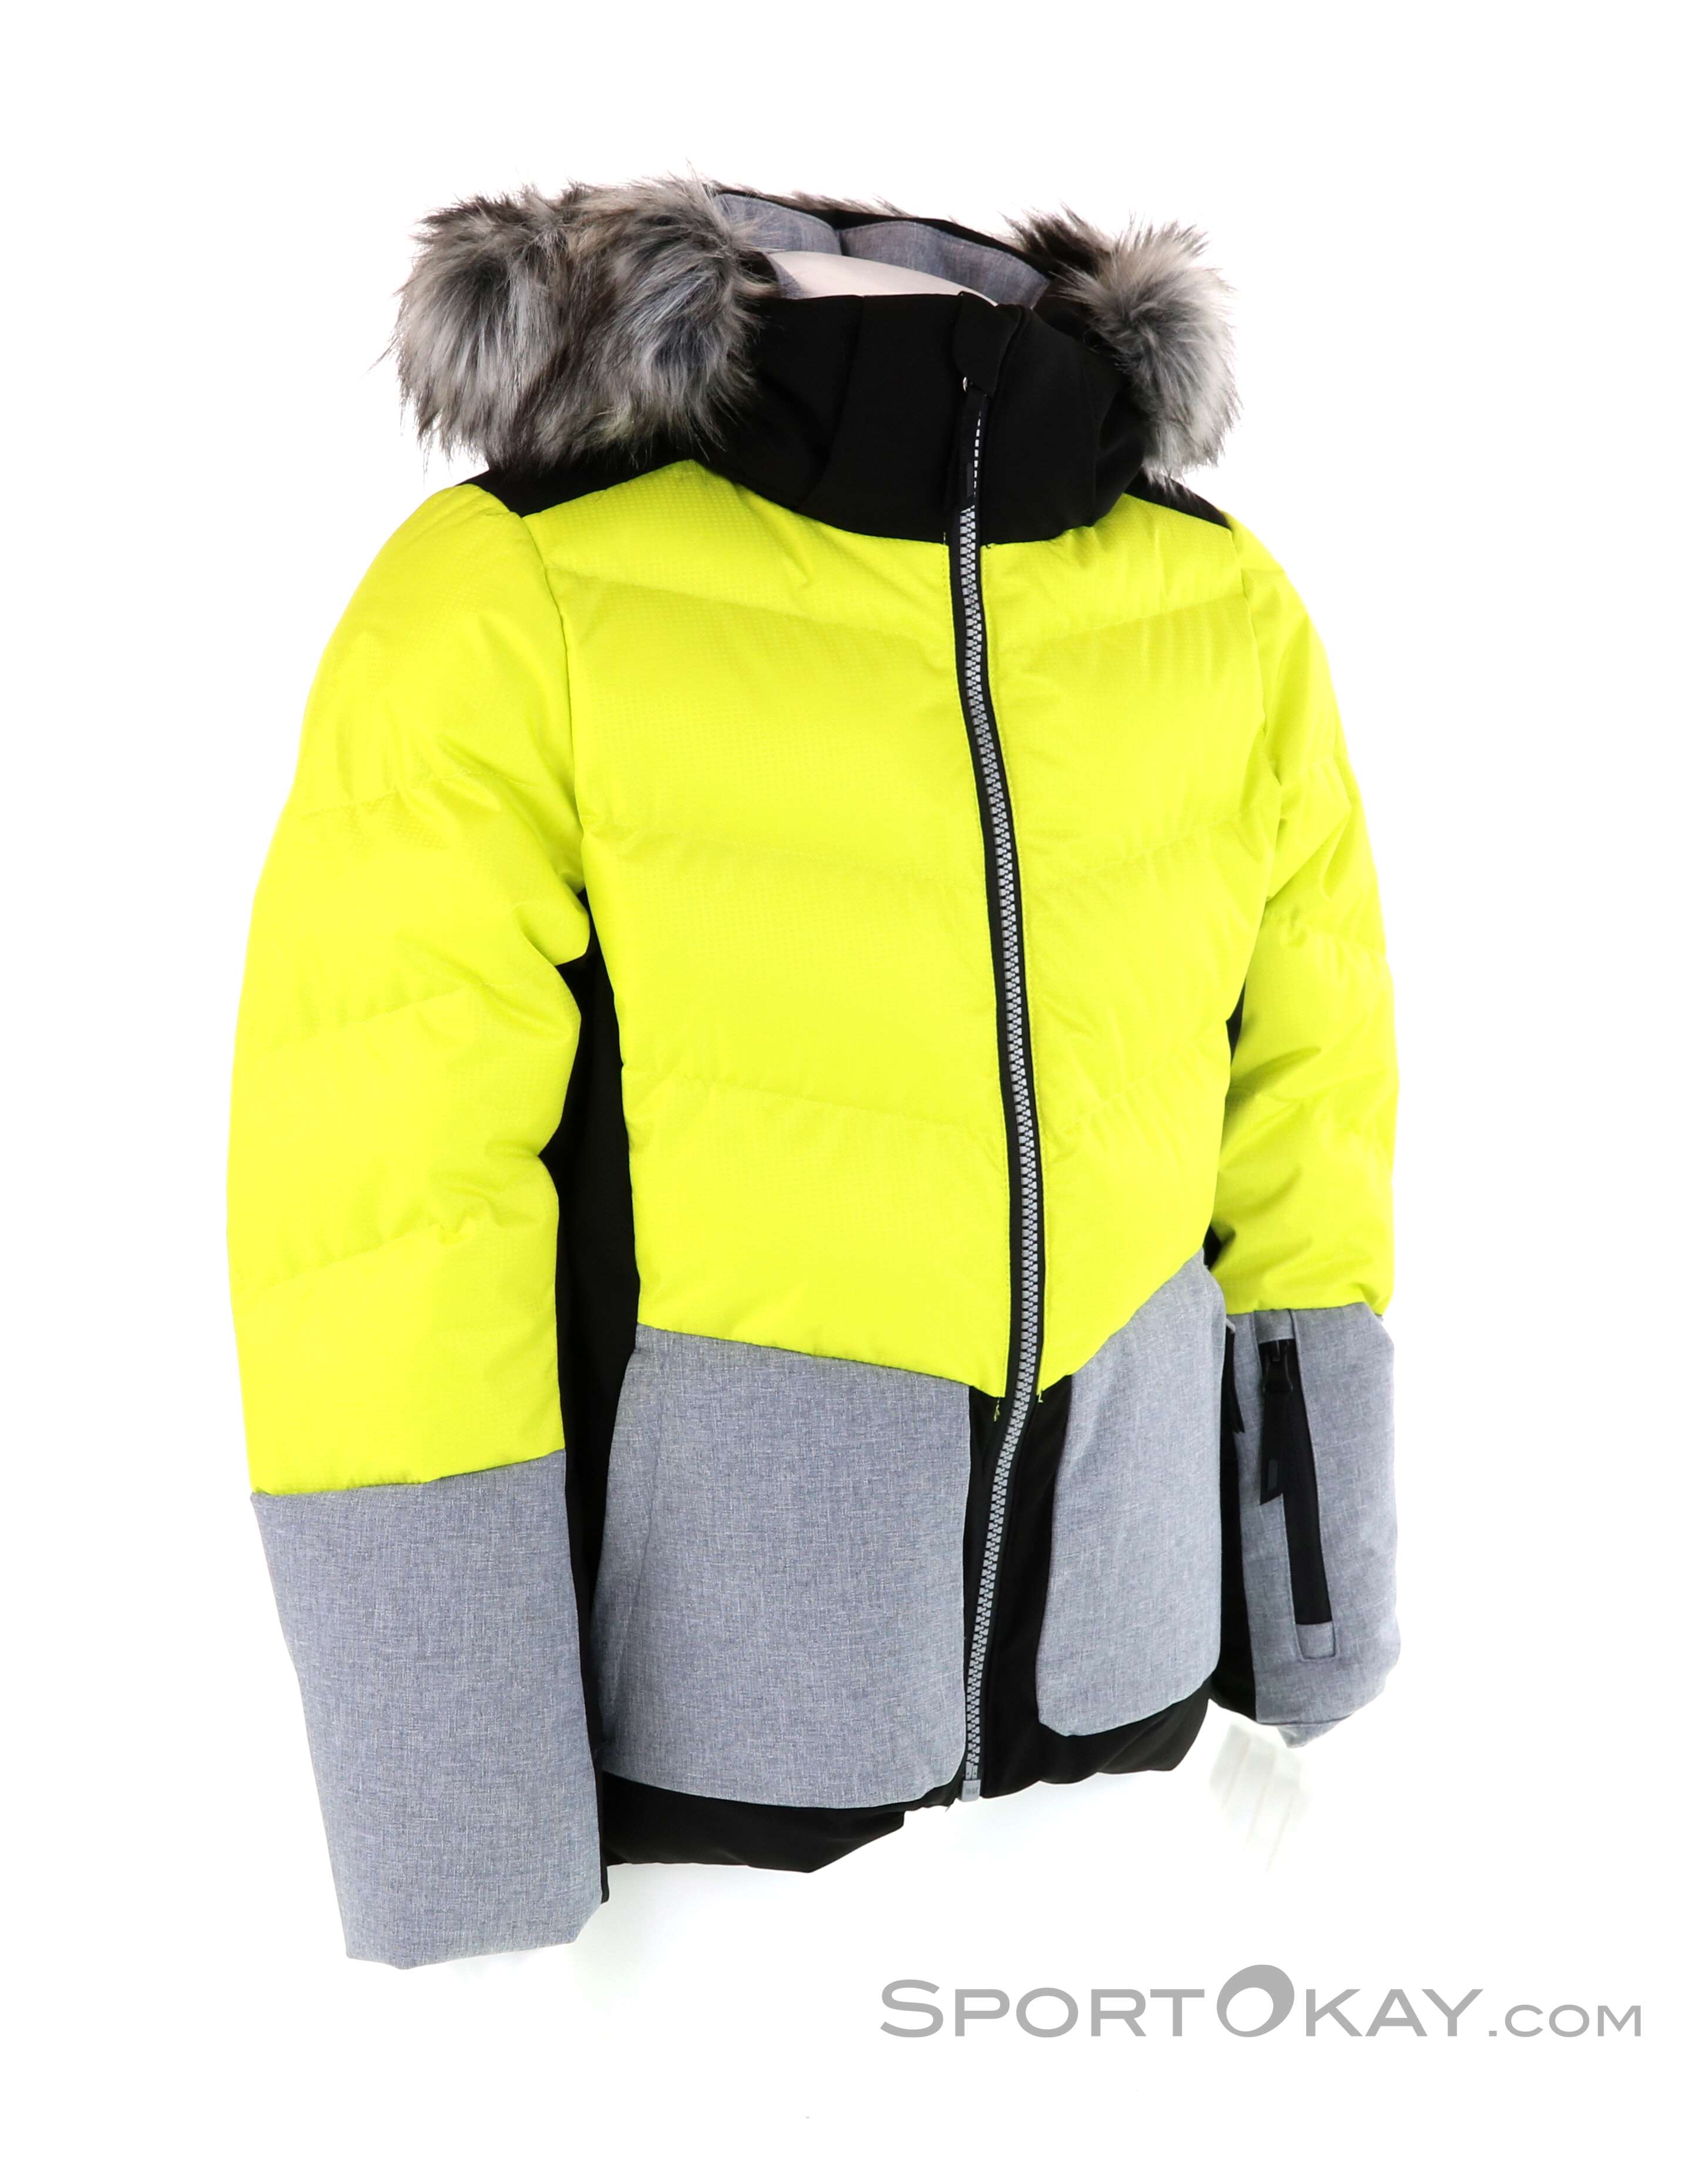 Icepeak Lillie Ski Jacket - Ski Jackets - Ski Clothing - Ski Freeride - All